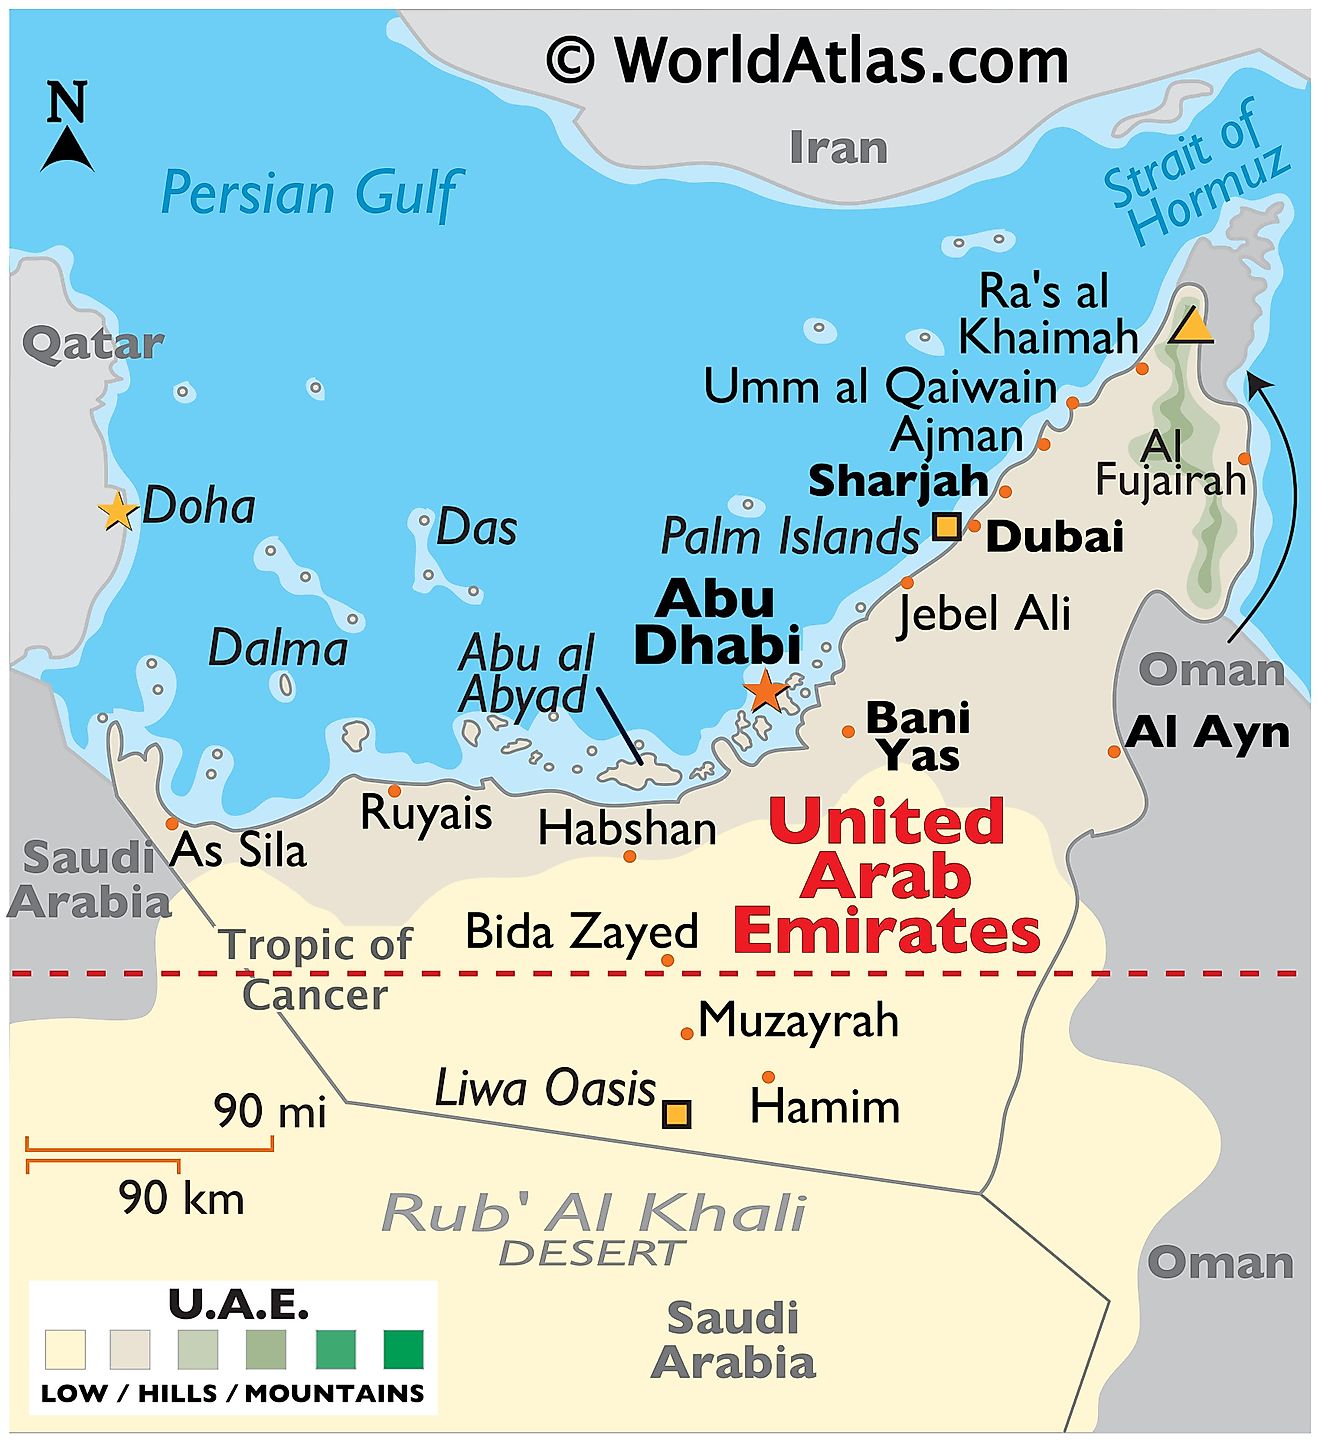 Mapa físico de los Emiratos Árabes Unidos (EAU) que muestra las fronteras internacionales, el relieve, el desierto de Rub' Al Khali, el Oasis de Lisa, las Islas Palm, etc.